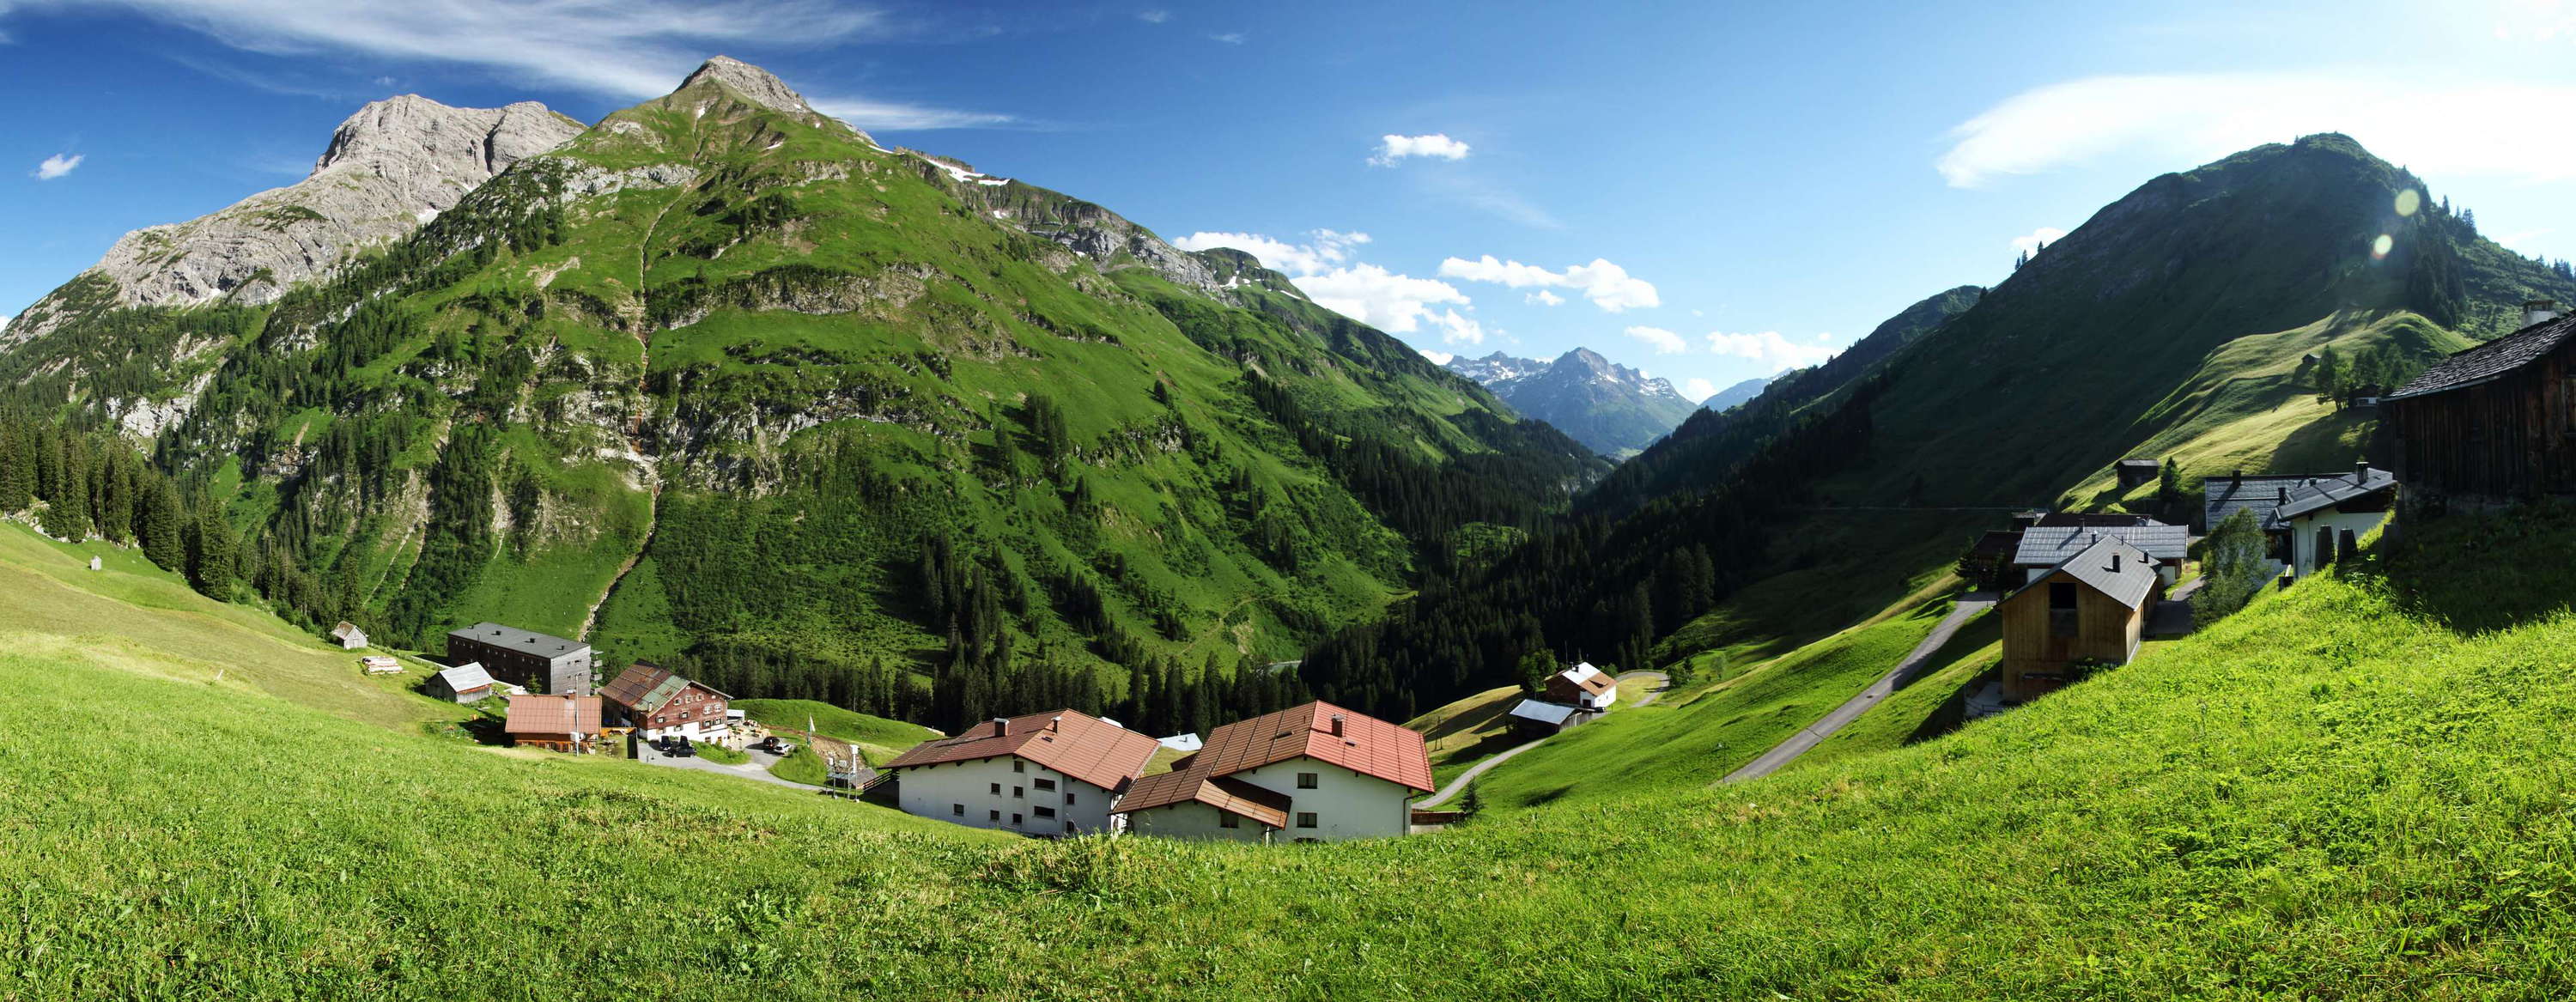 Lechtal Valley | Warth